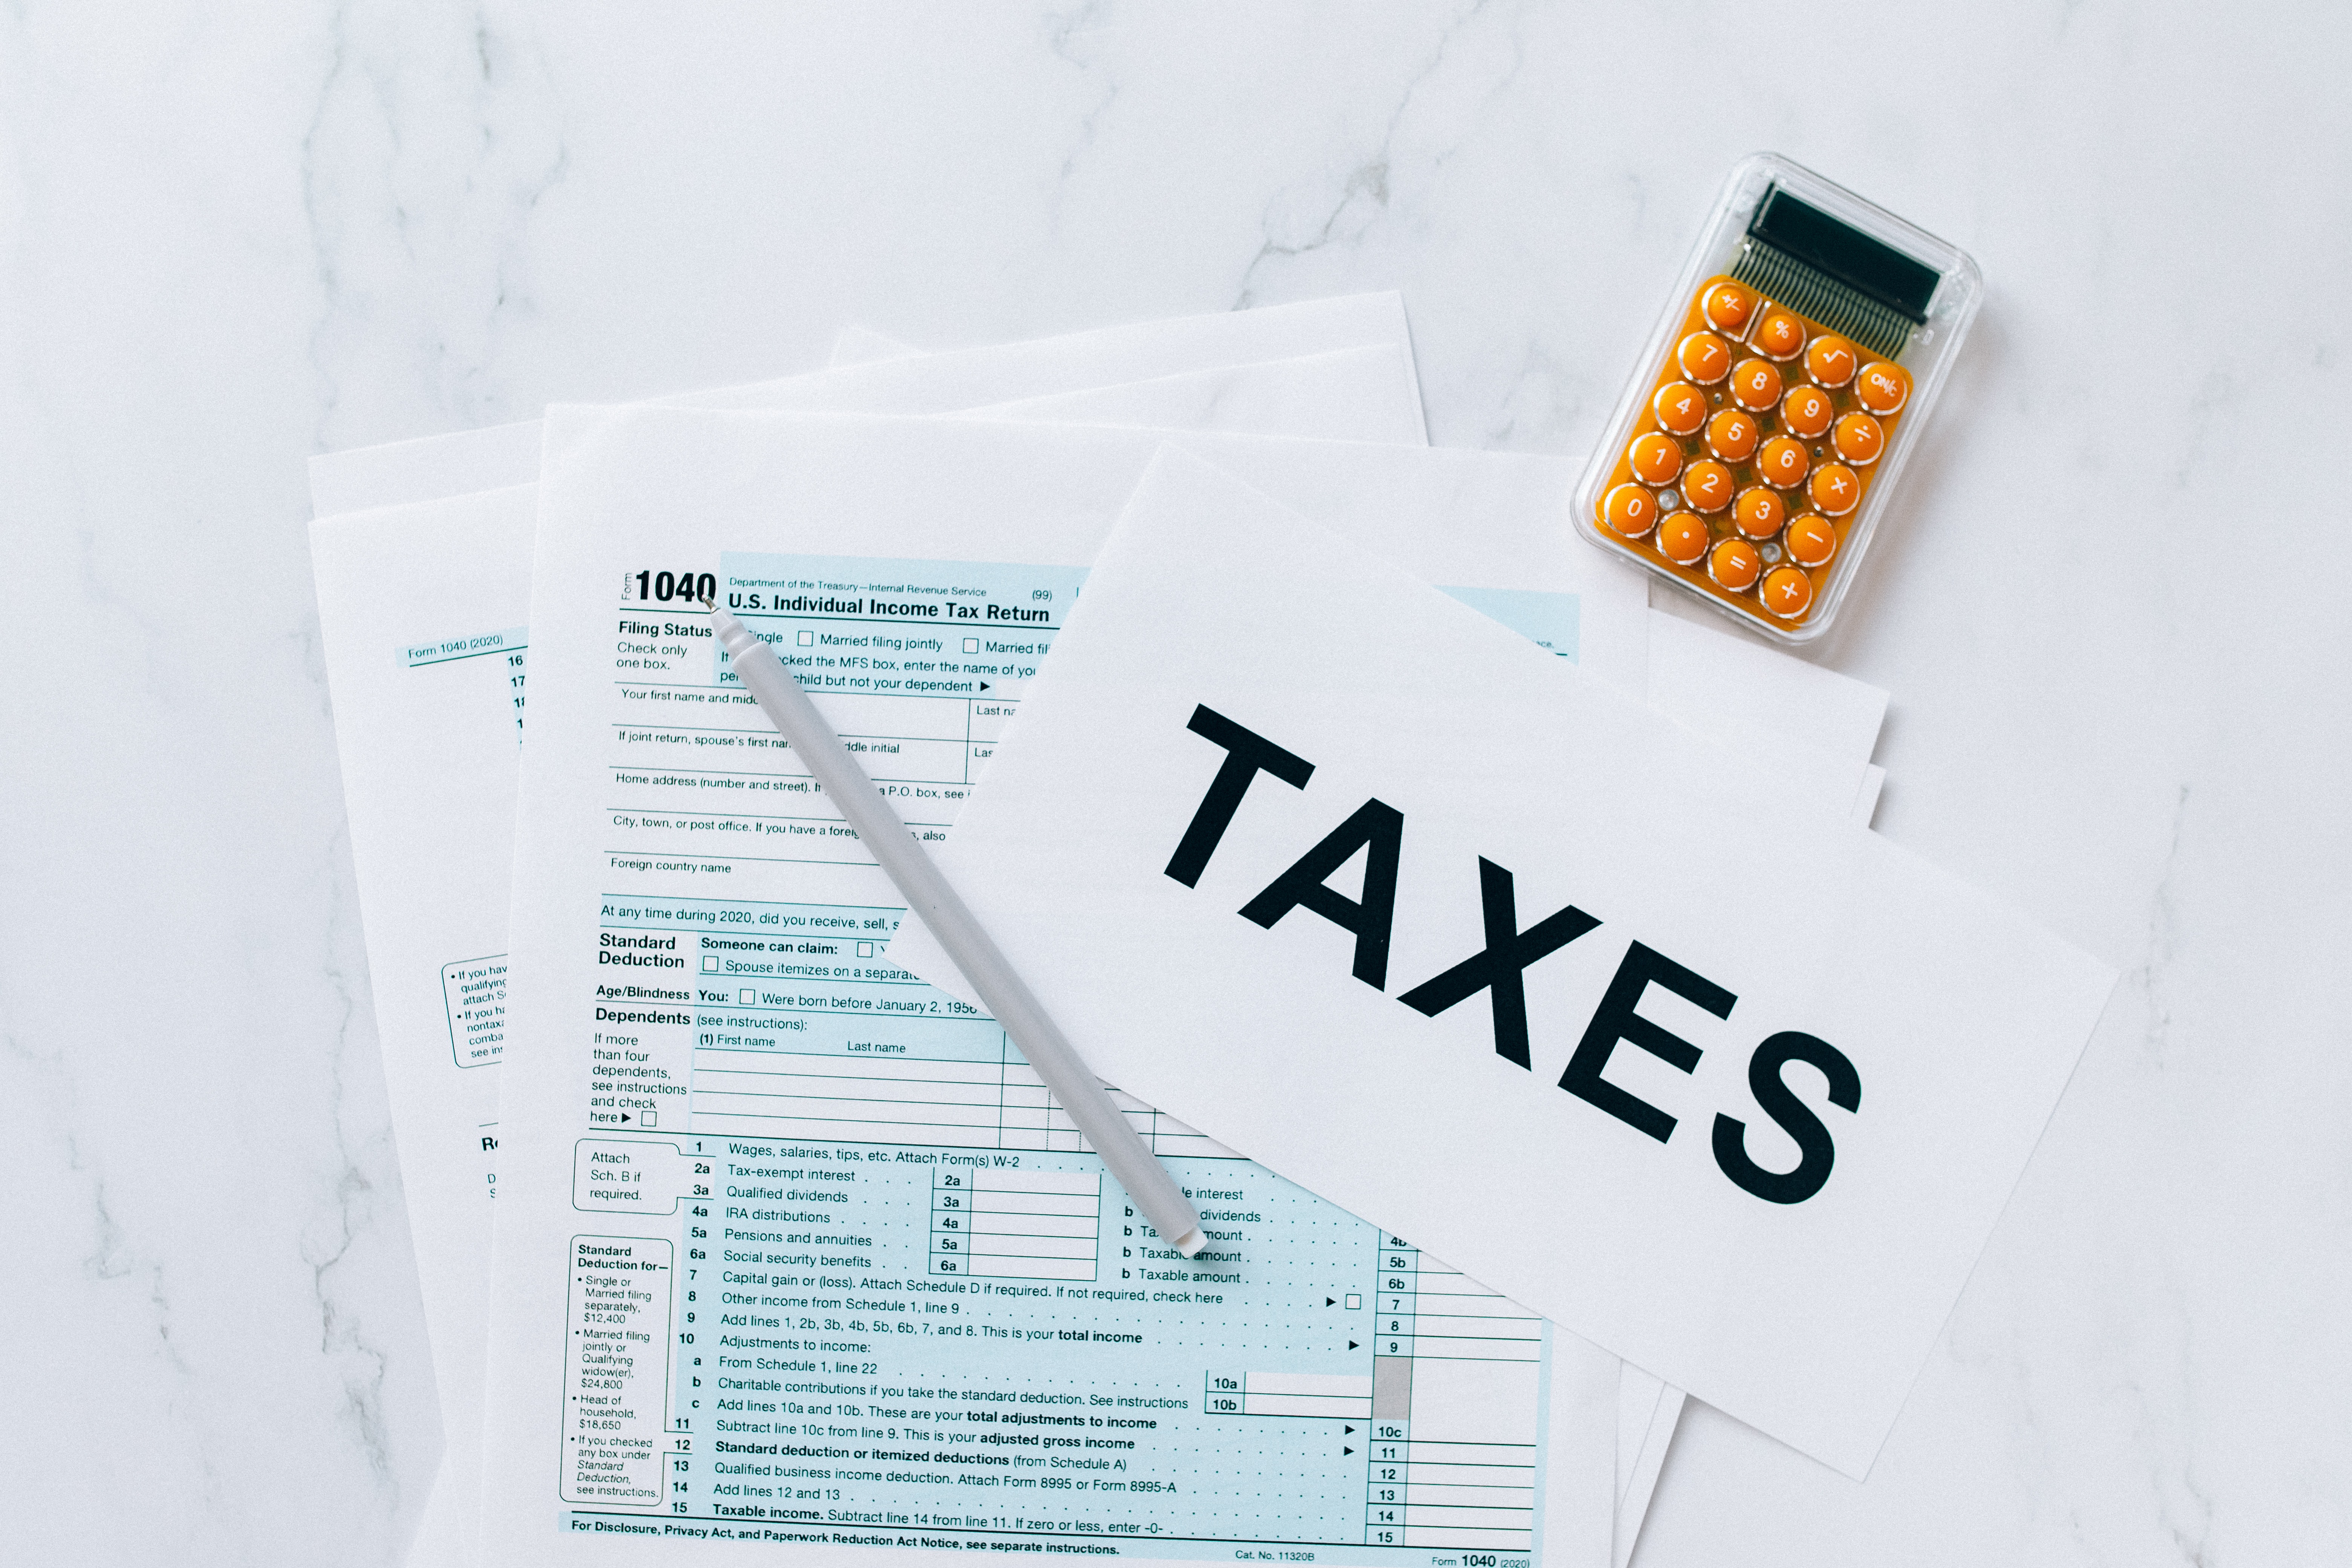 Việc tính thuế chuyển nhượng bất động sản được căn cứ trên giá trị giao dịch thực tế và được tính trên cơ sở thuế suất được quy định tại Luật Thuế Tài sản.